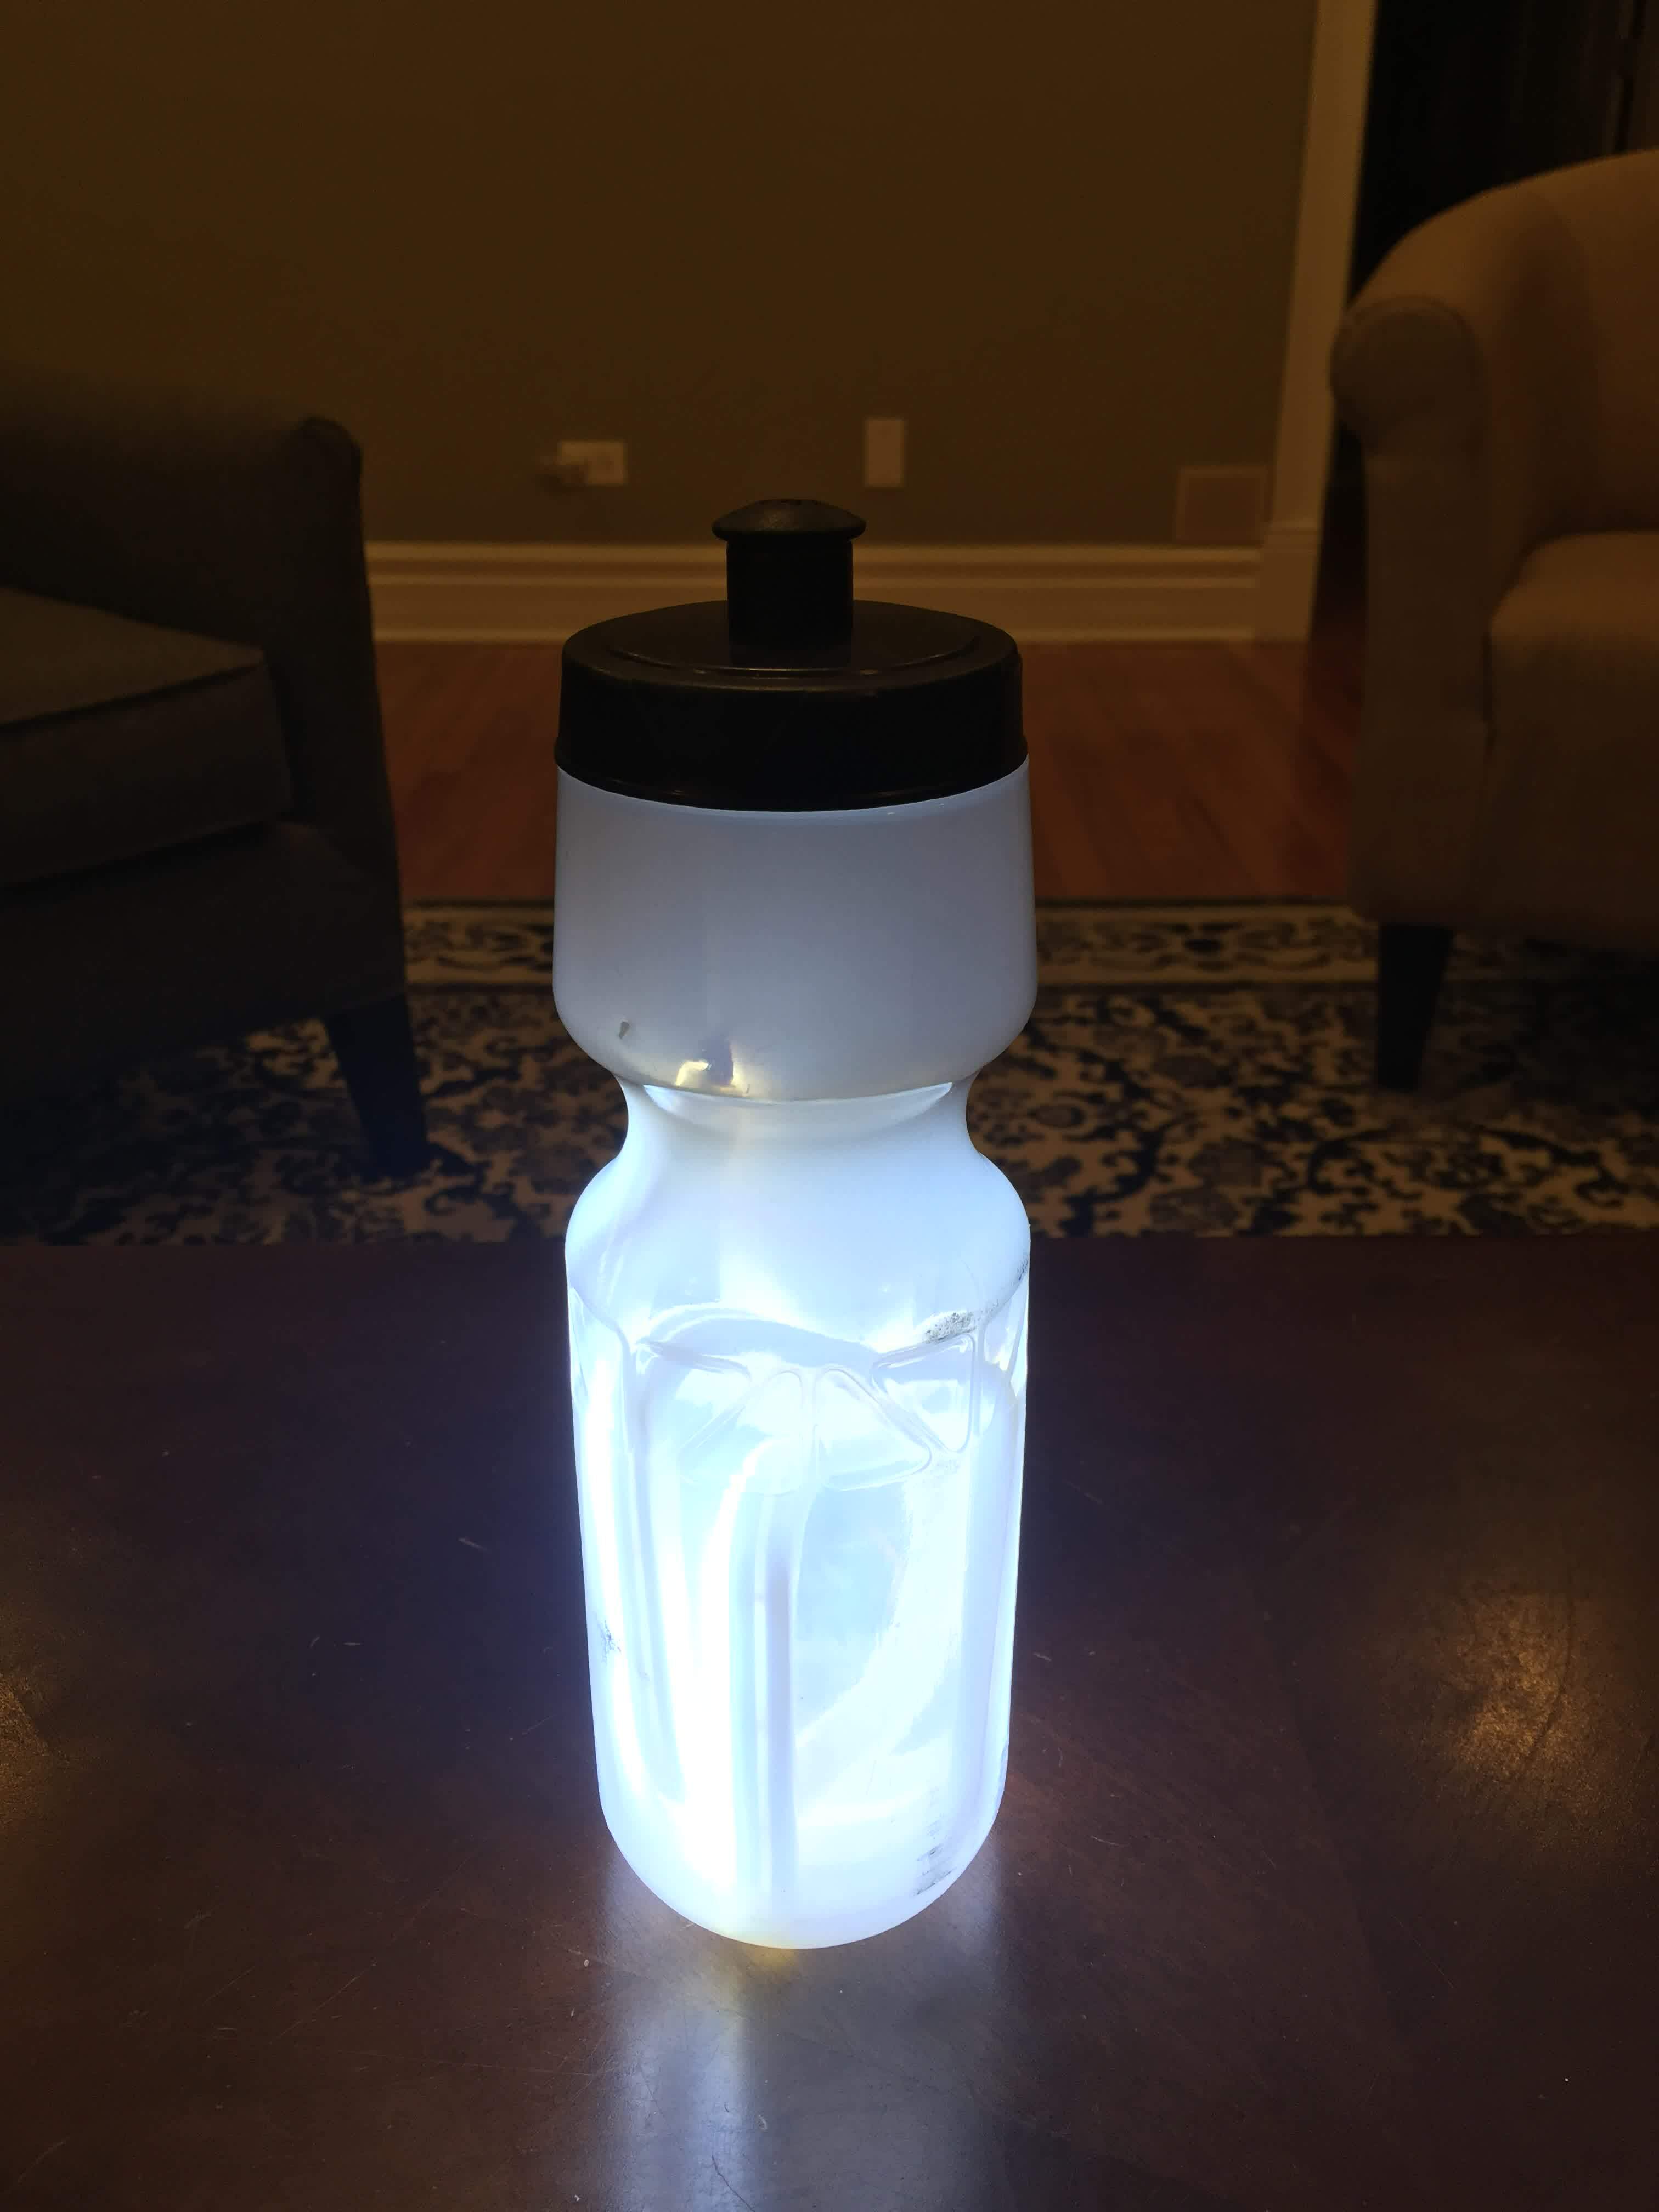 Water bottle aglow